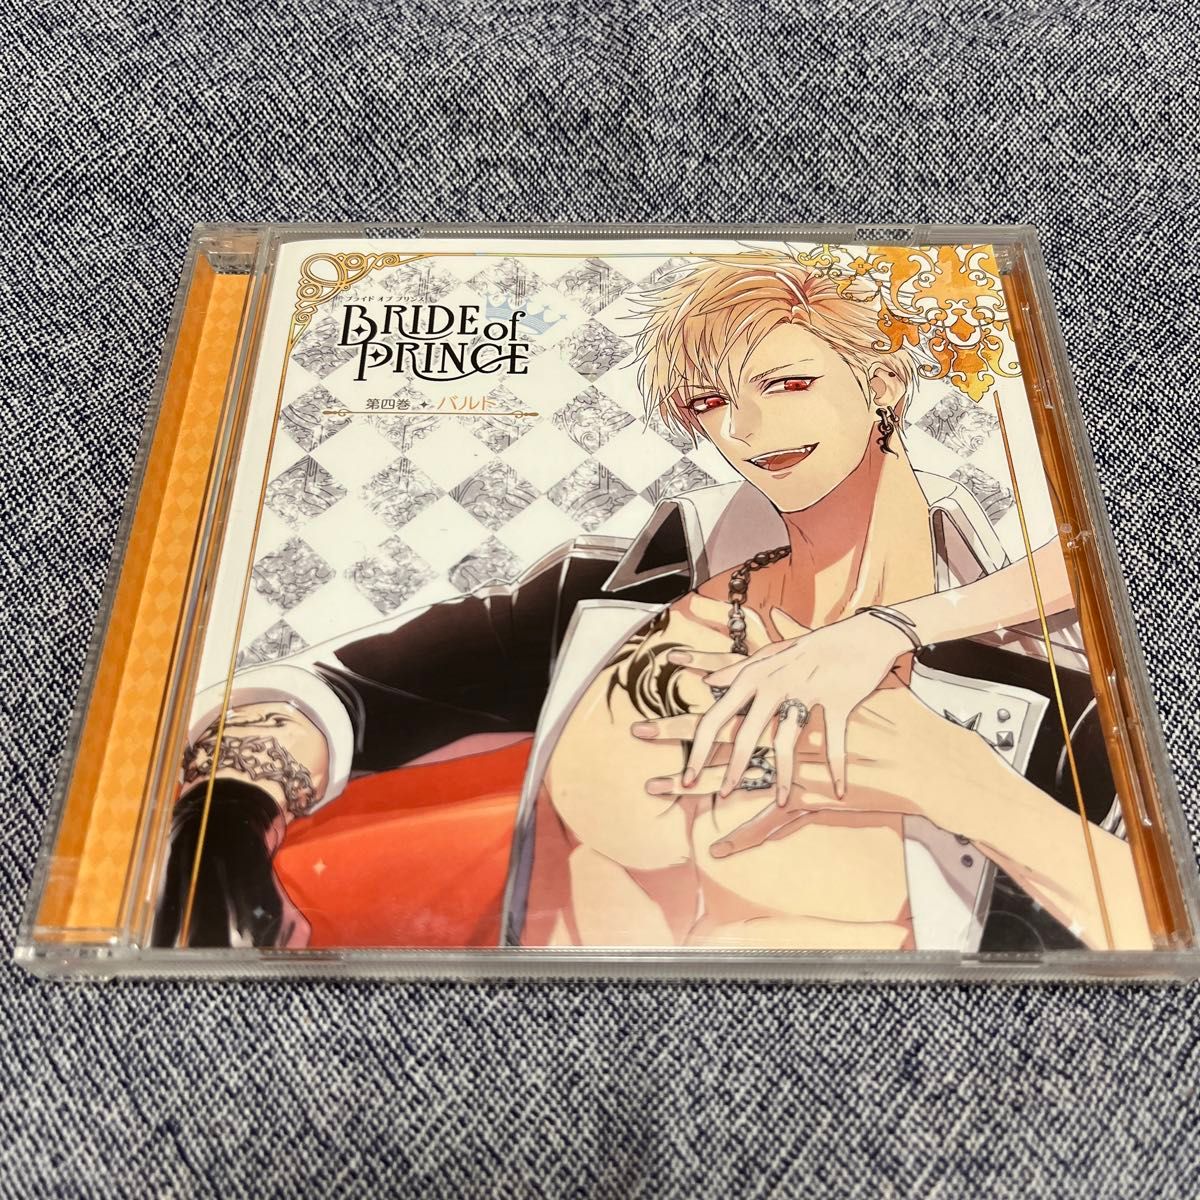 [国内盤CD] 「BRIDE of PRINCE」 第四巻 バルト/バルト (CV.小野友樹)